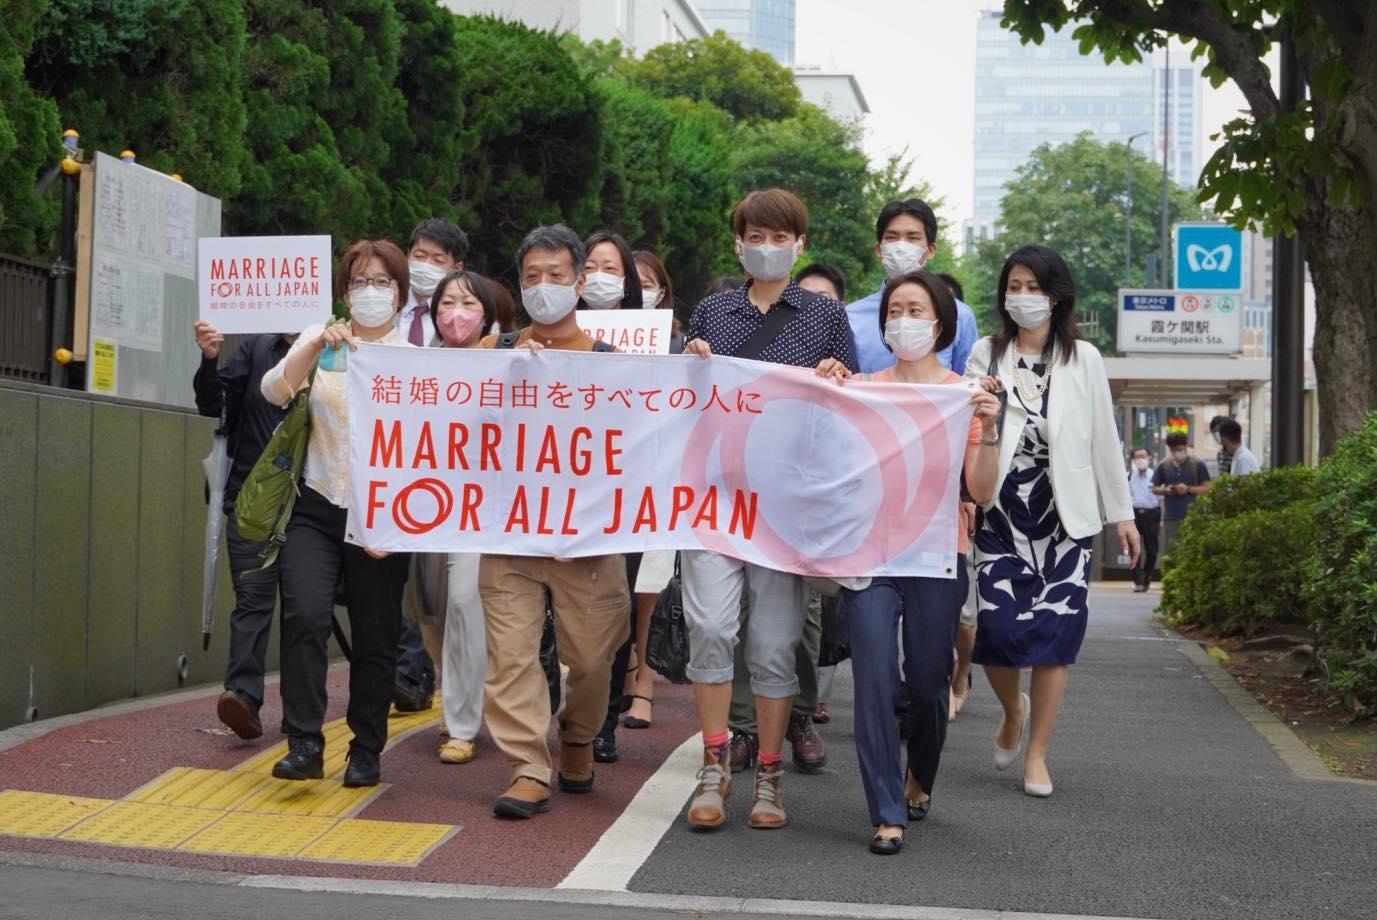 東京地方裁判所に入るべく、数列になり歩く人々　１列目の人は、結婚の自由をすべての人にと書かれた横断幕を持っている